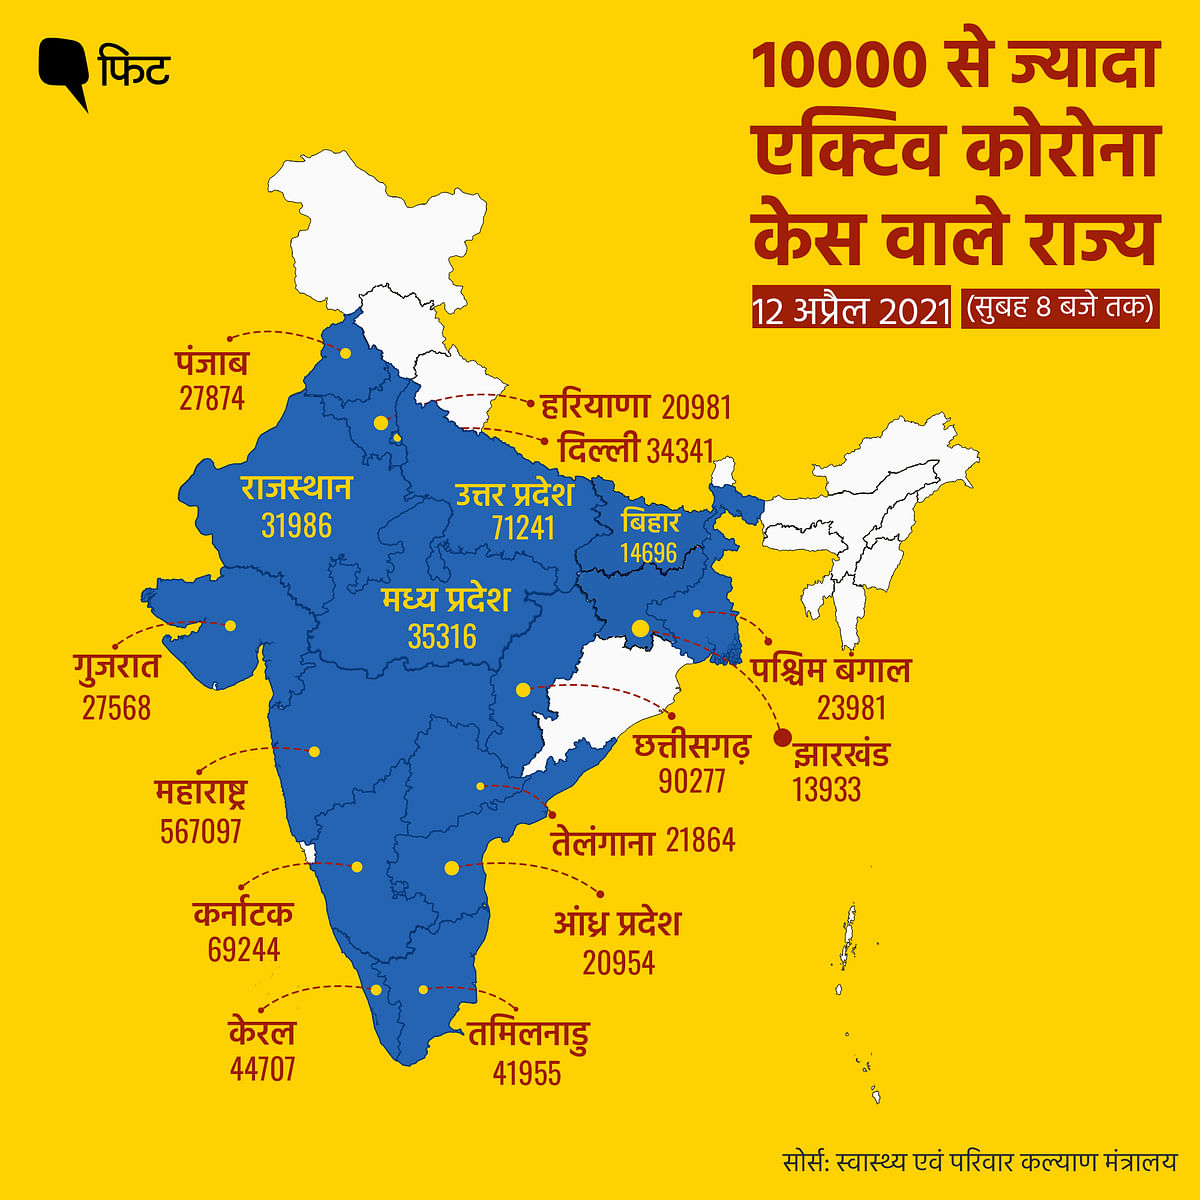 भारत में एक्टिव केसों की कुल संख्या 12 लाख पार कर गई है.